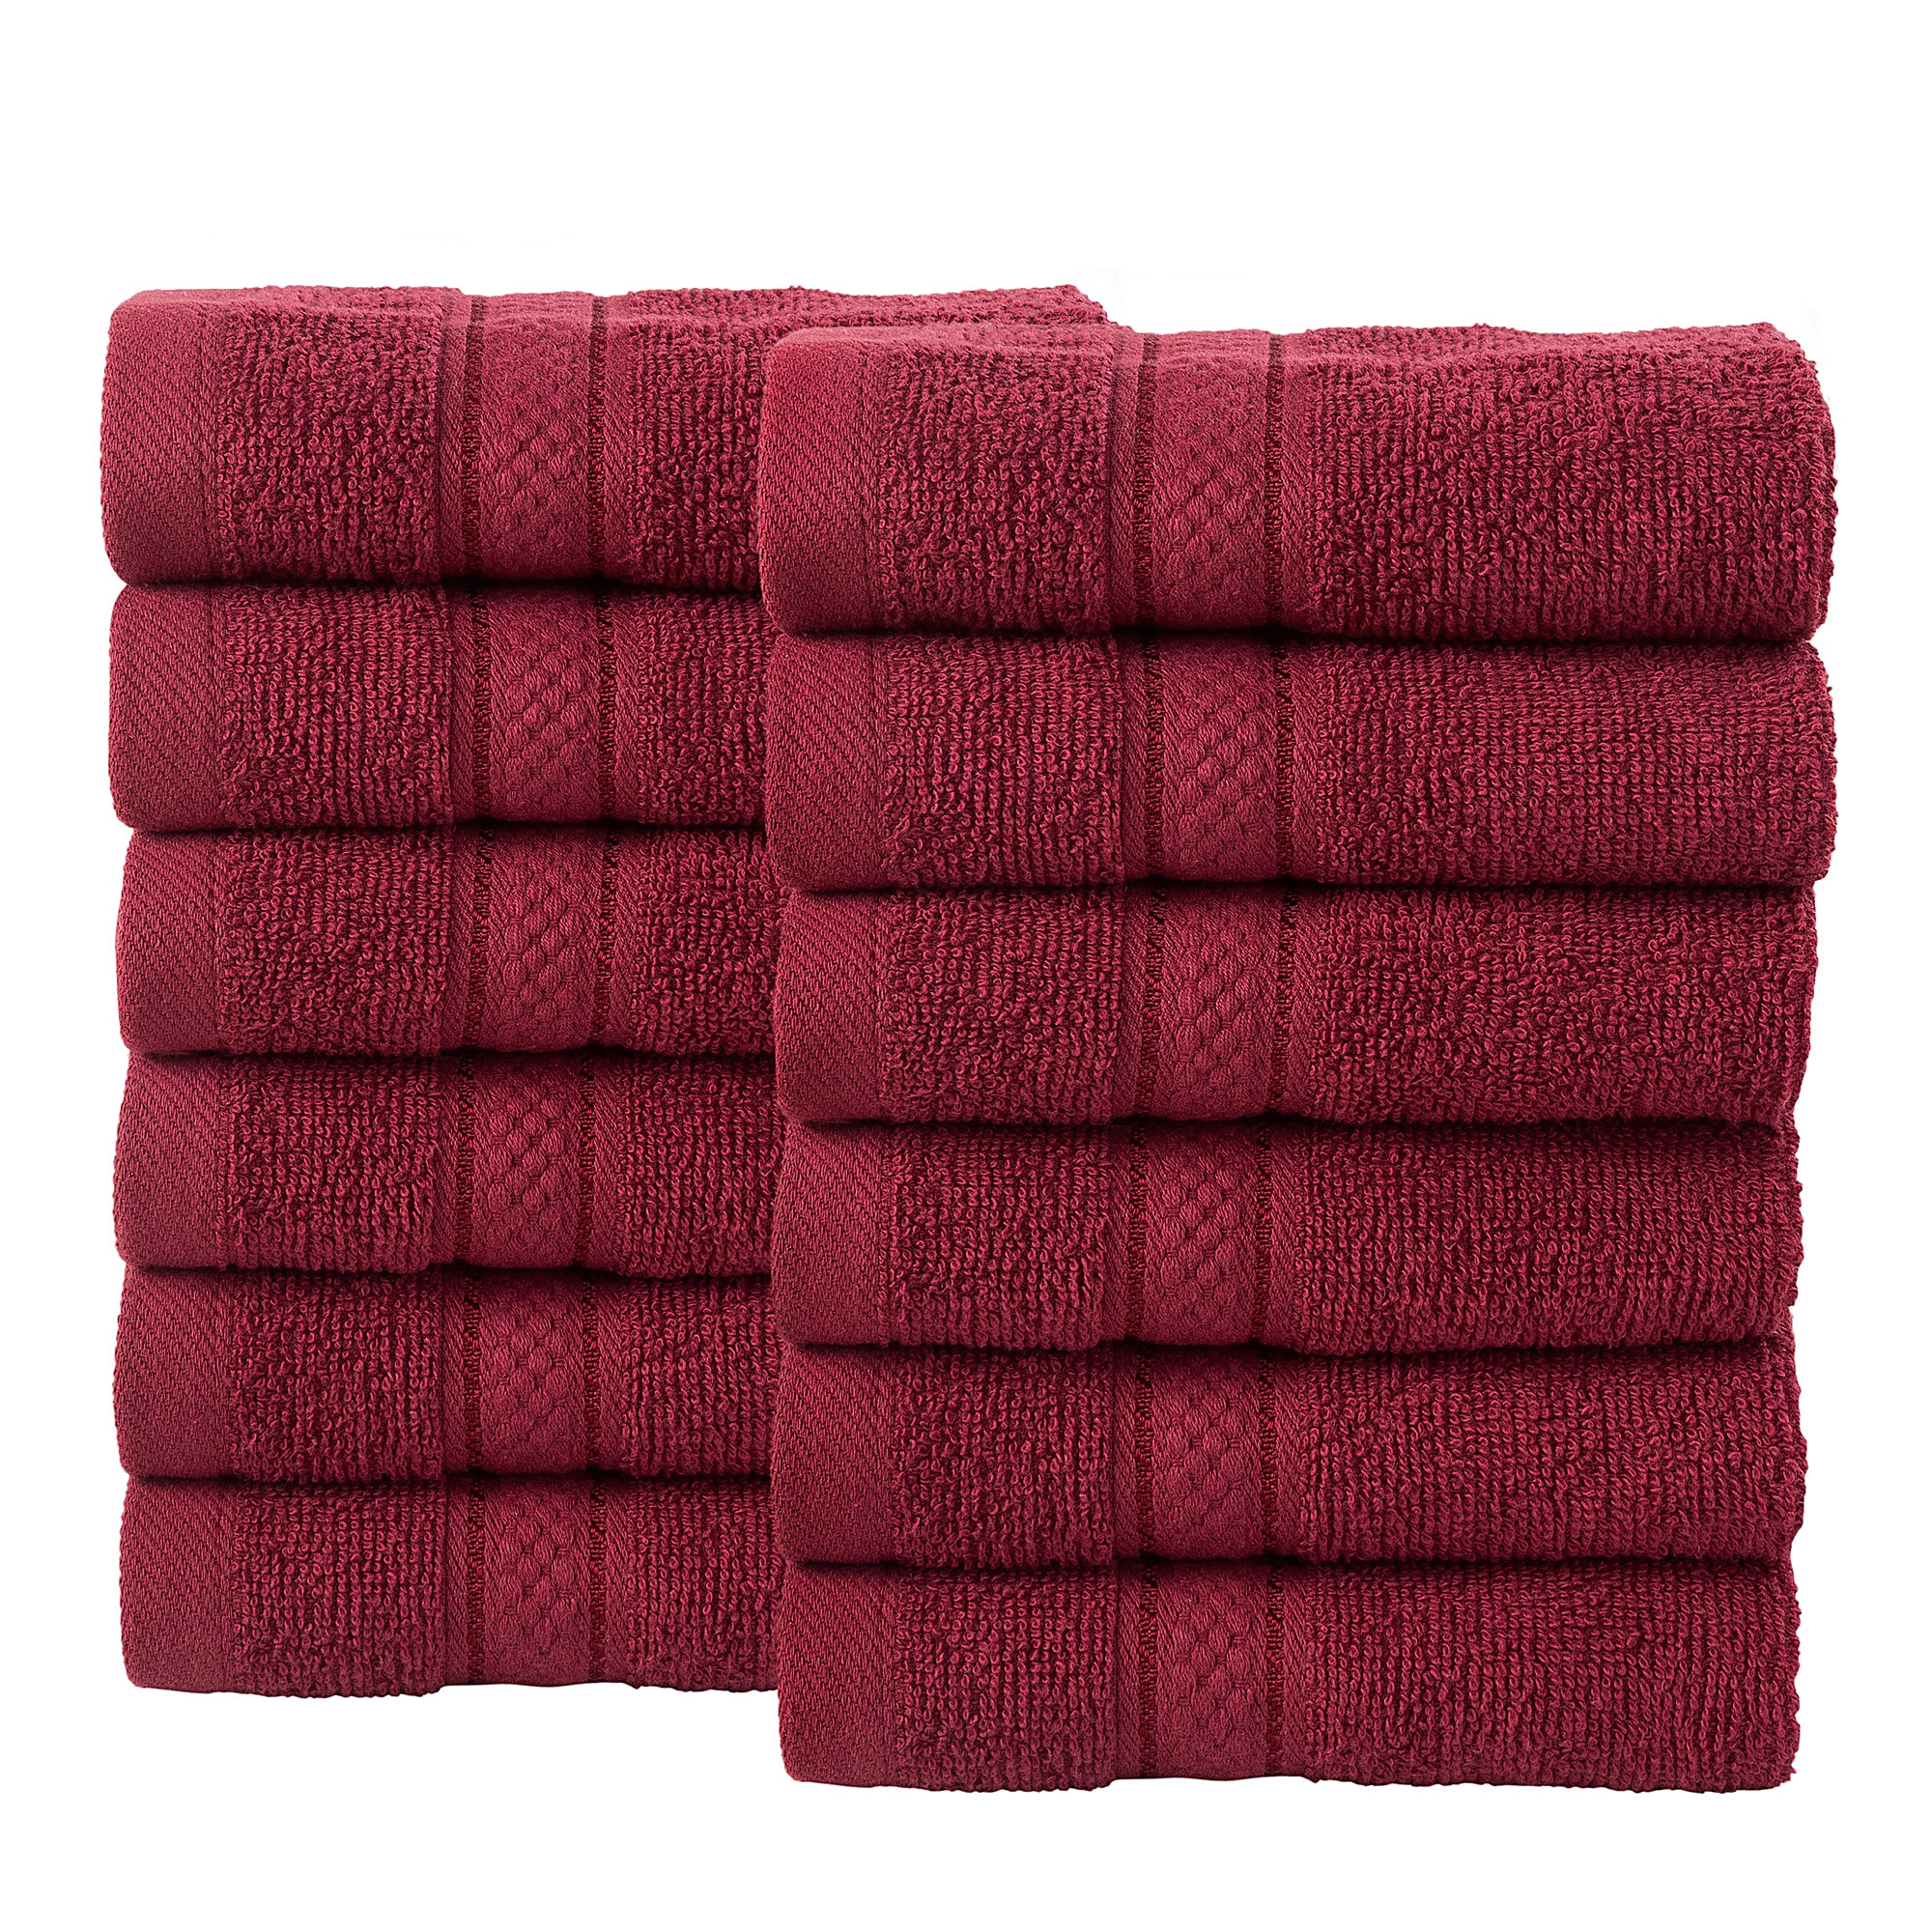 12 Pcs Face Cotton Towel Bale Set Burgandy Plain